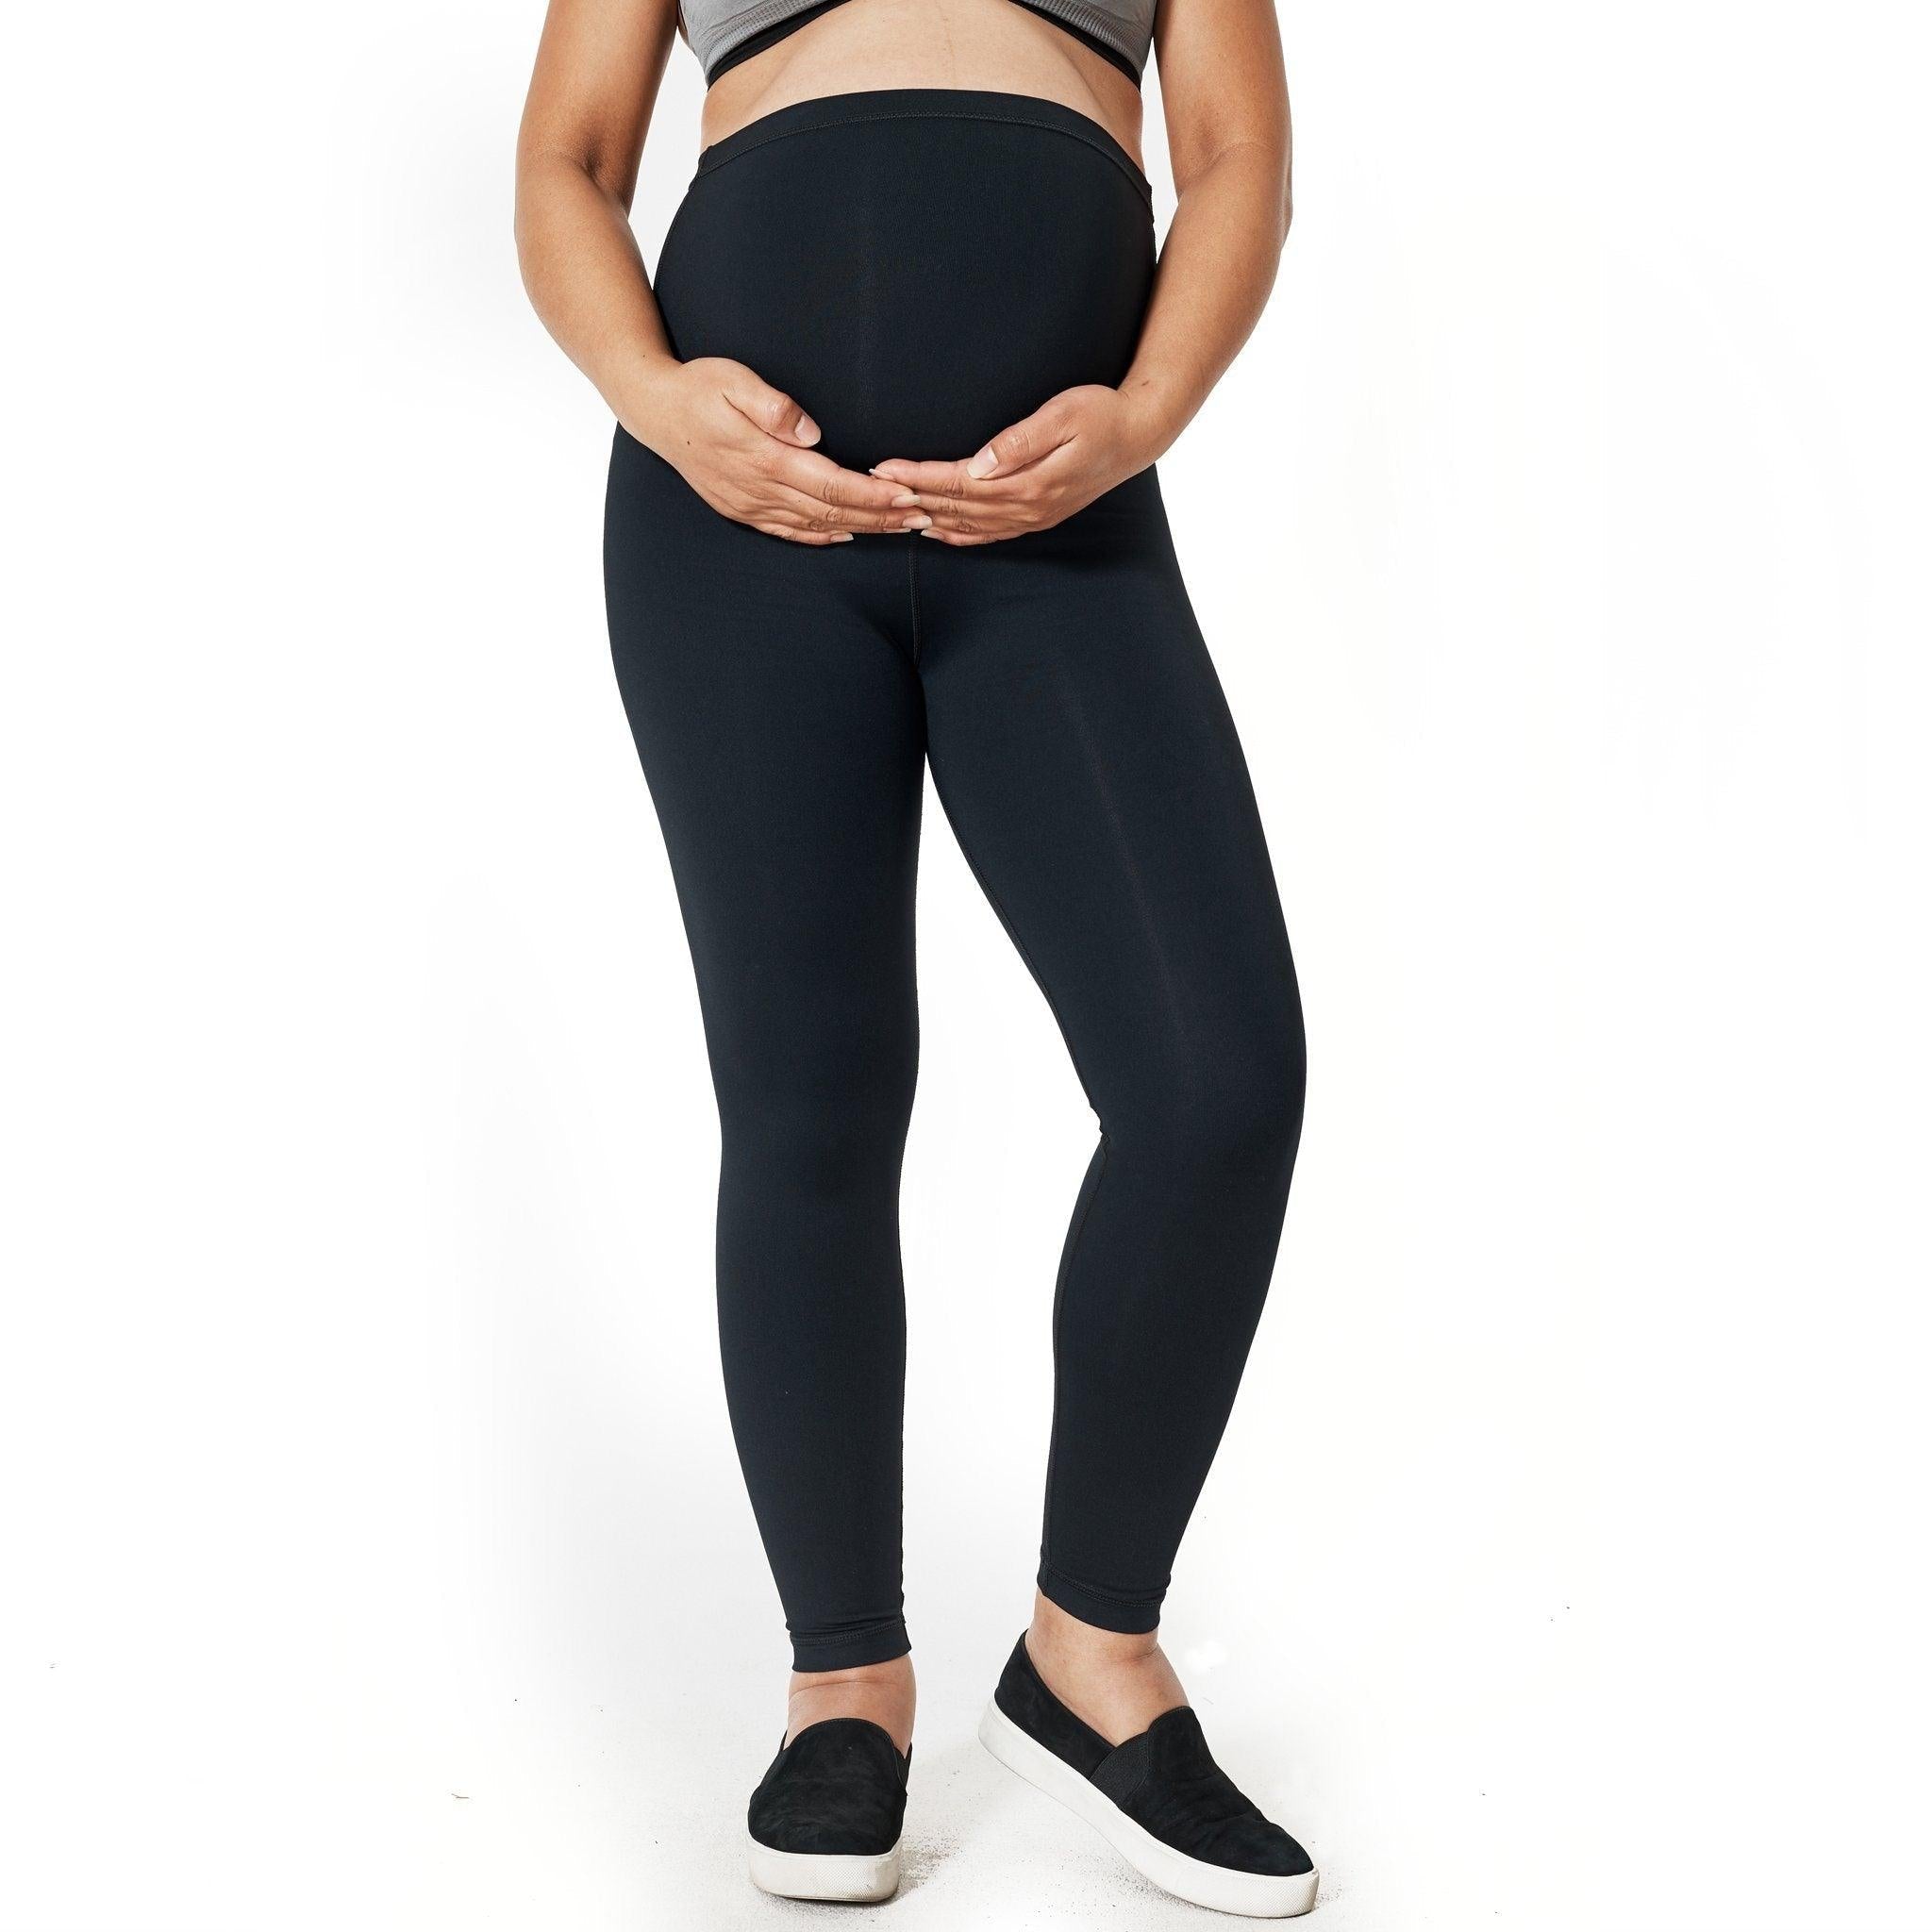 Do I really need Maternity leggings? – Mummactiv